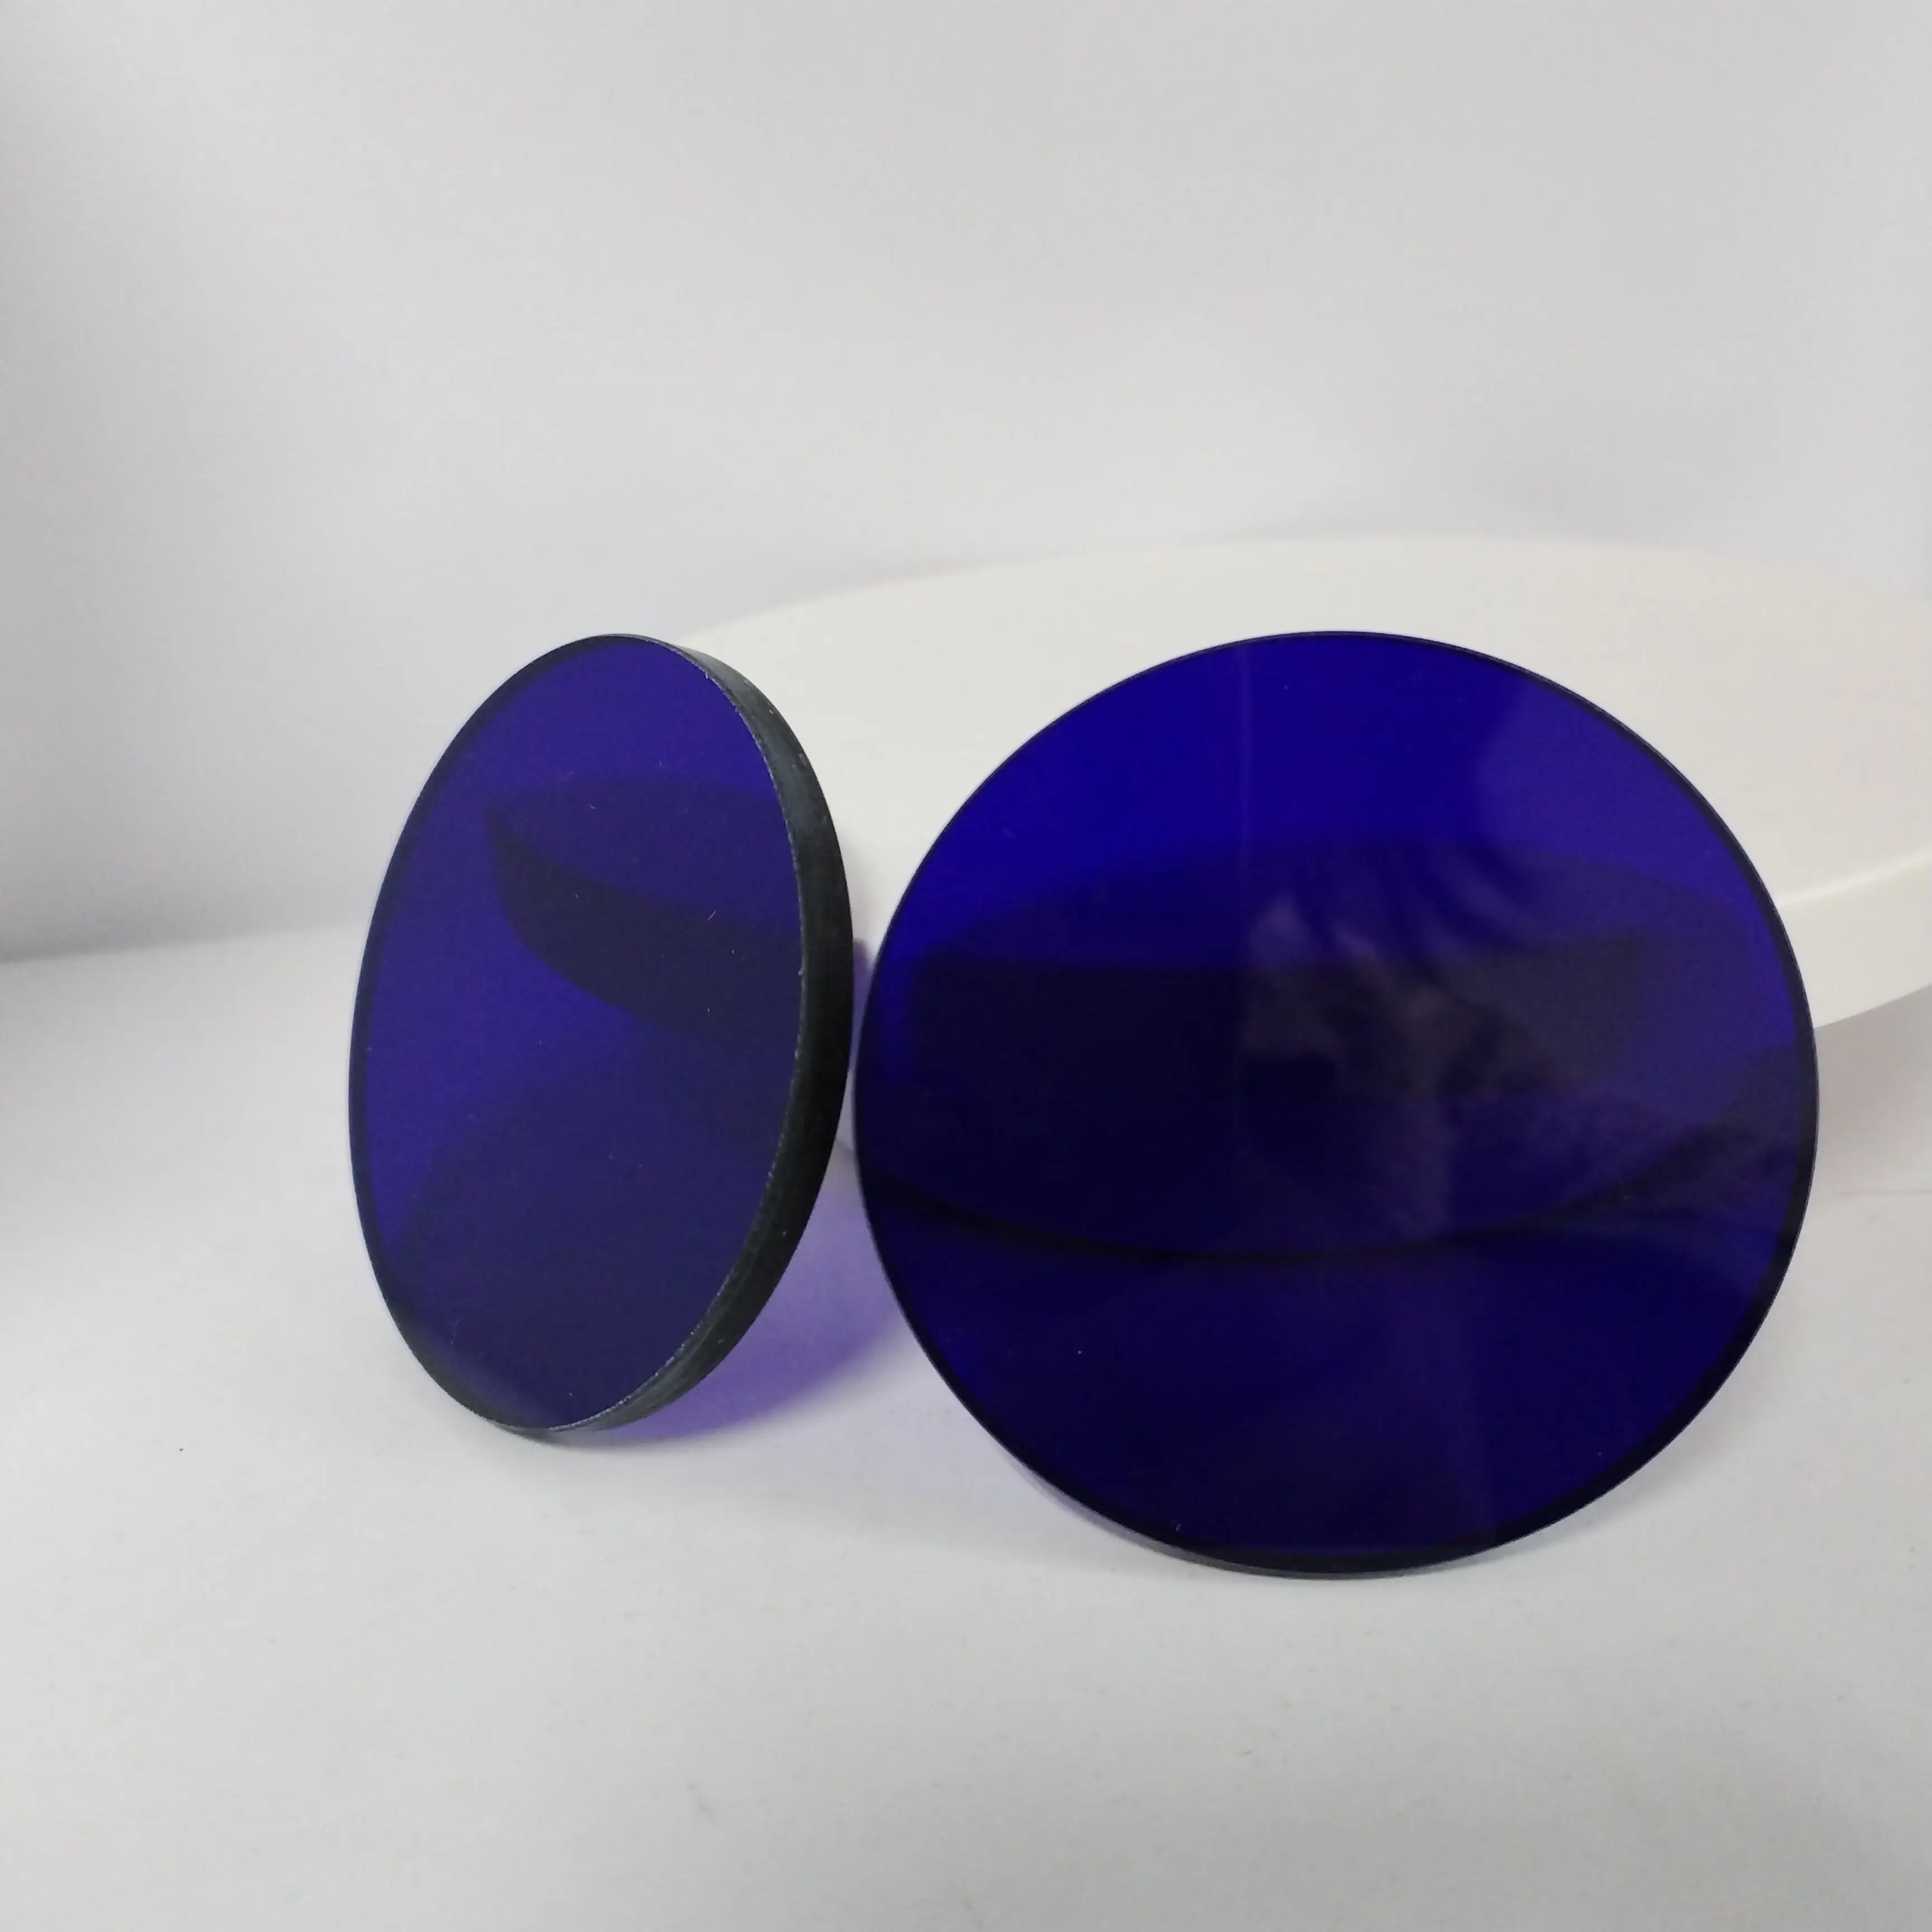 Lámina de vidrio azul cobalto Rectangular de alta calidad, filtro azul Qb24 óptica de interferencia, para observación de fuego